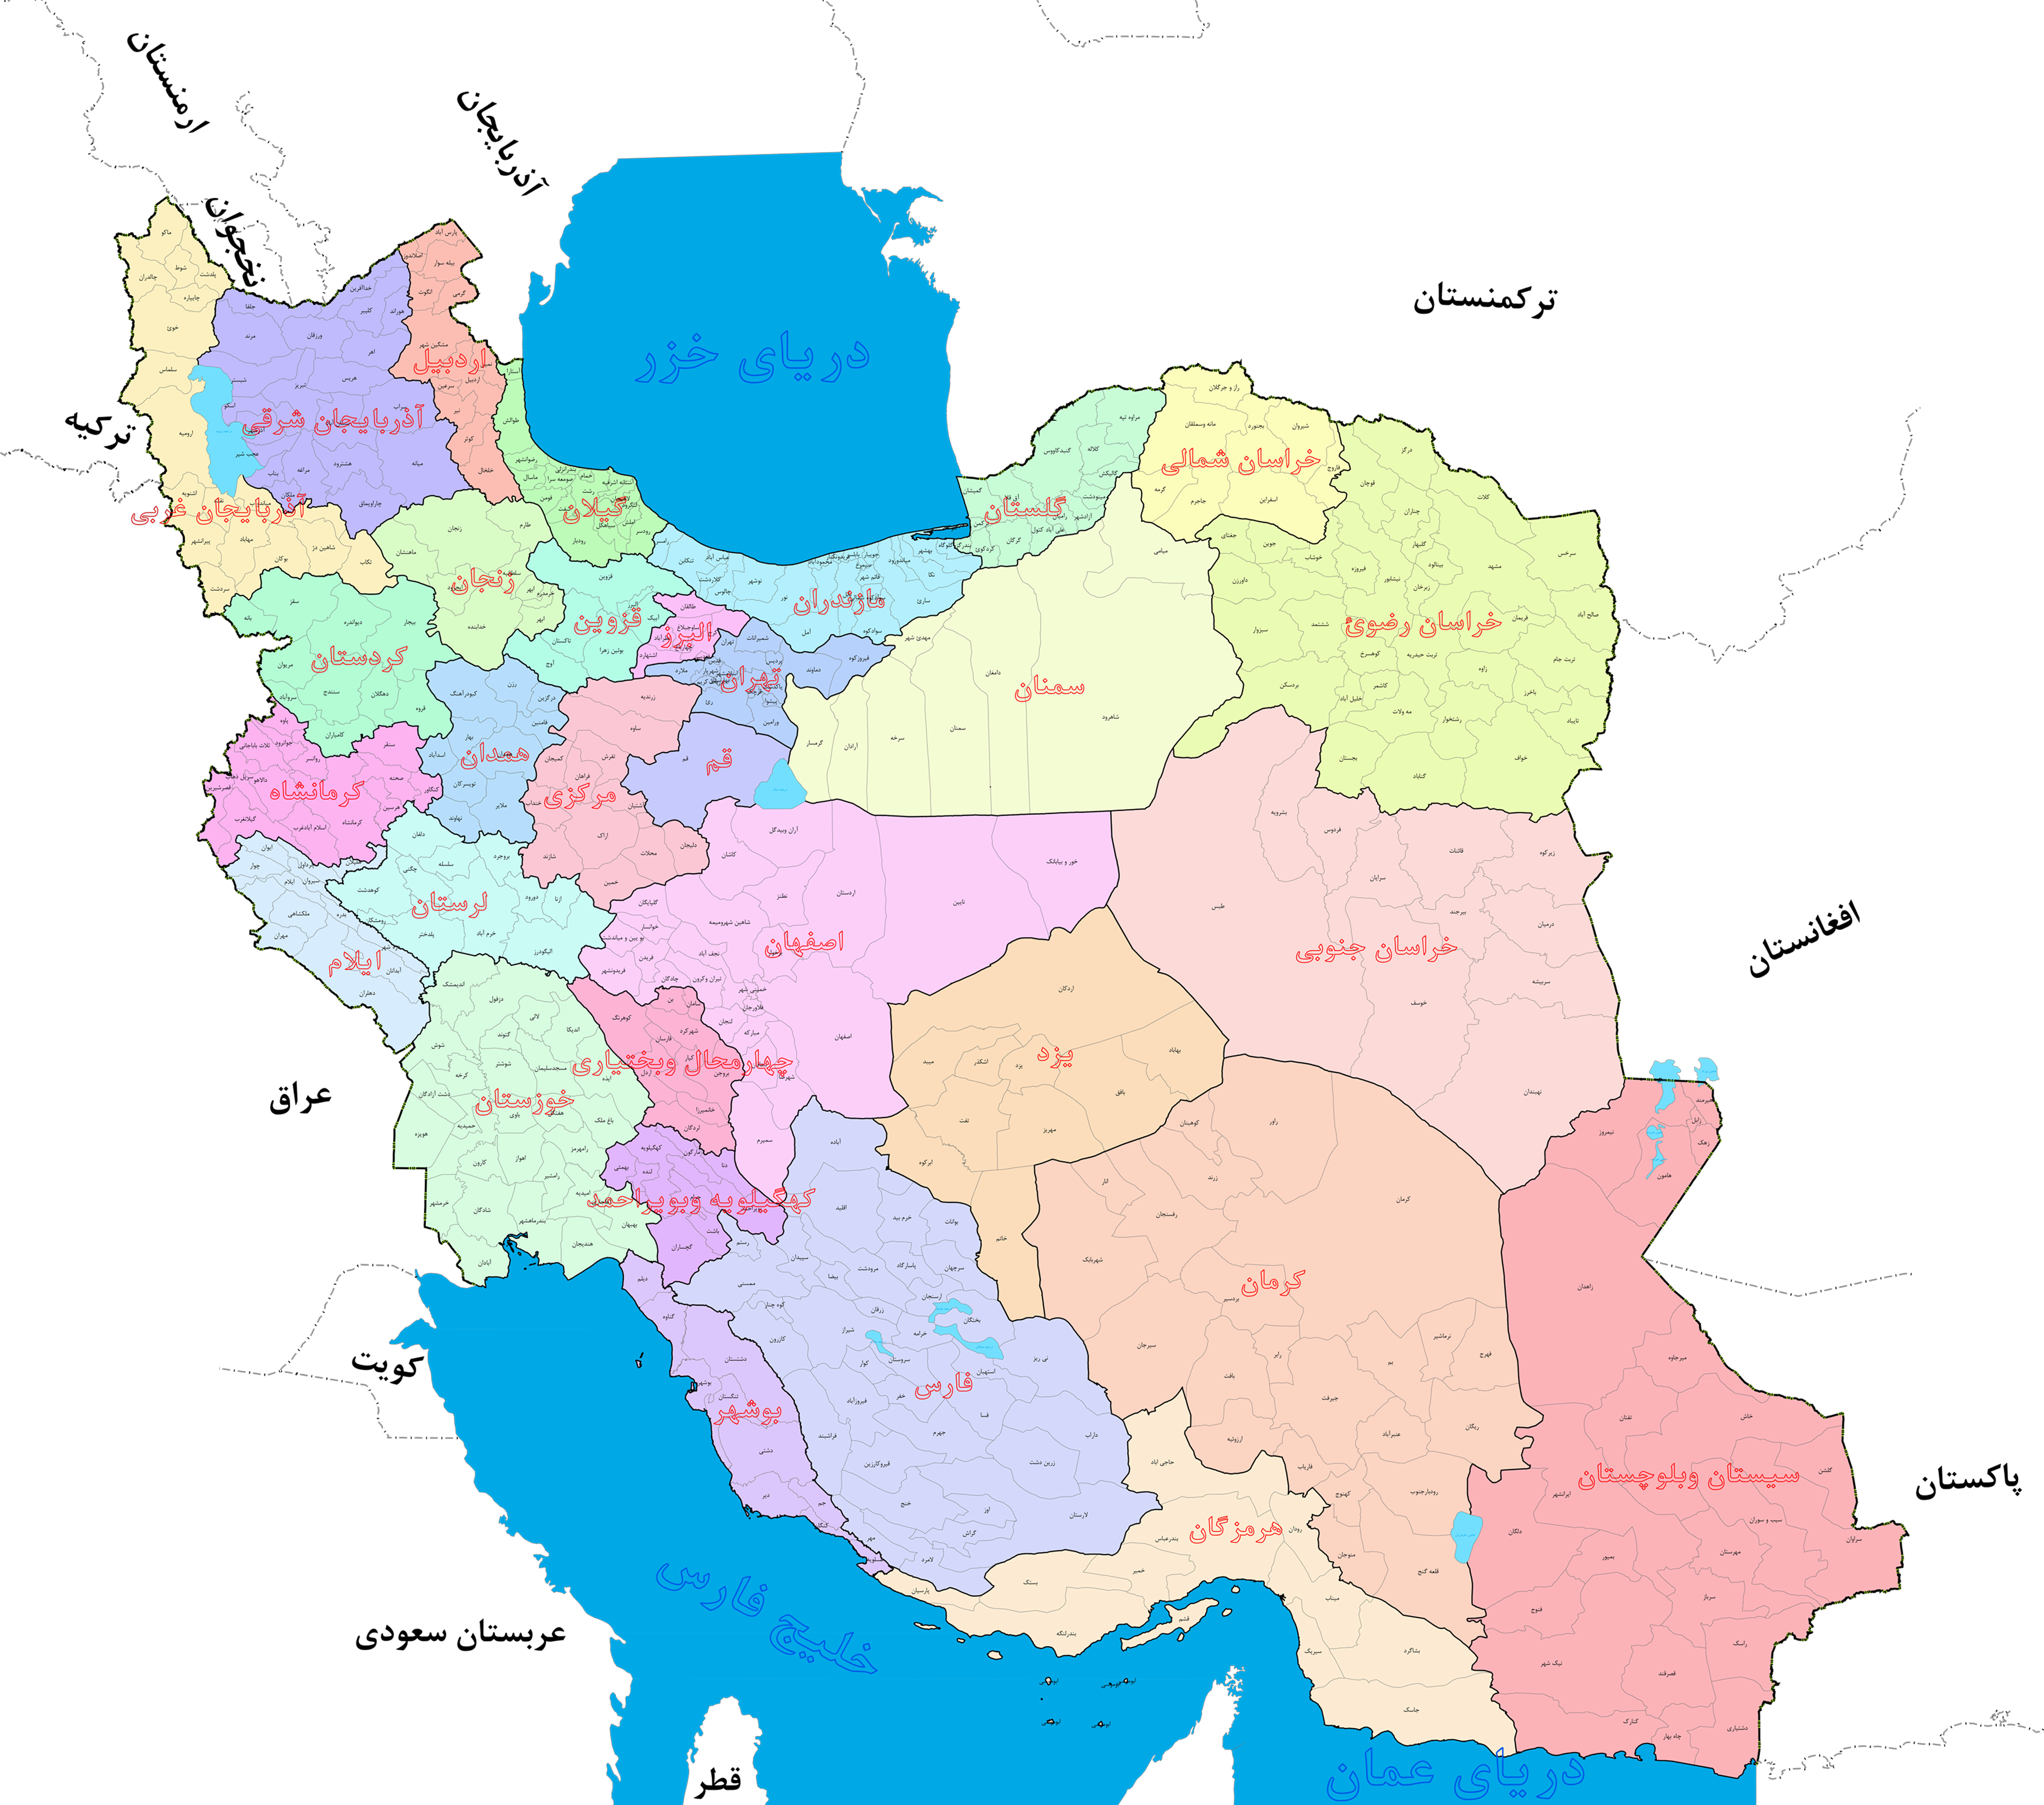  دانلود رایگان نقشه استانها ، شهرستانها و دهستانهای کشور ایران با کیفیت فوق العاده بالا 